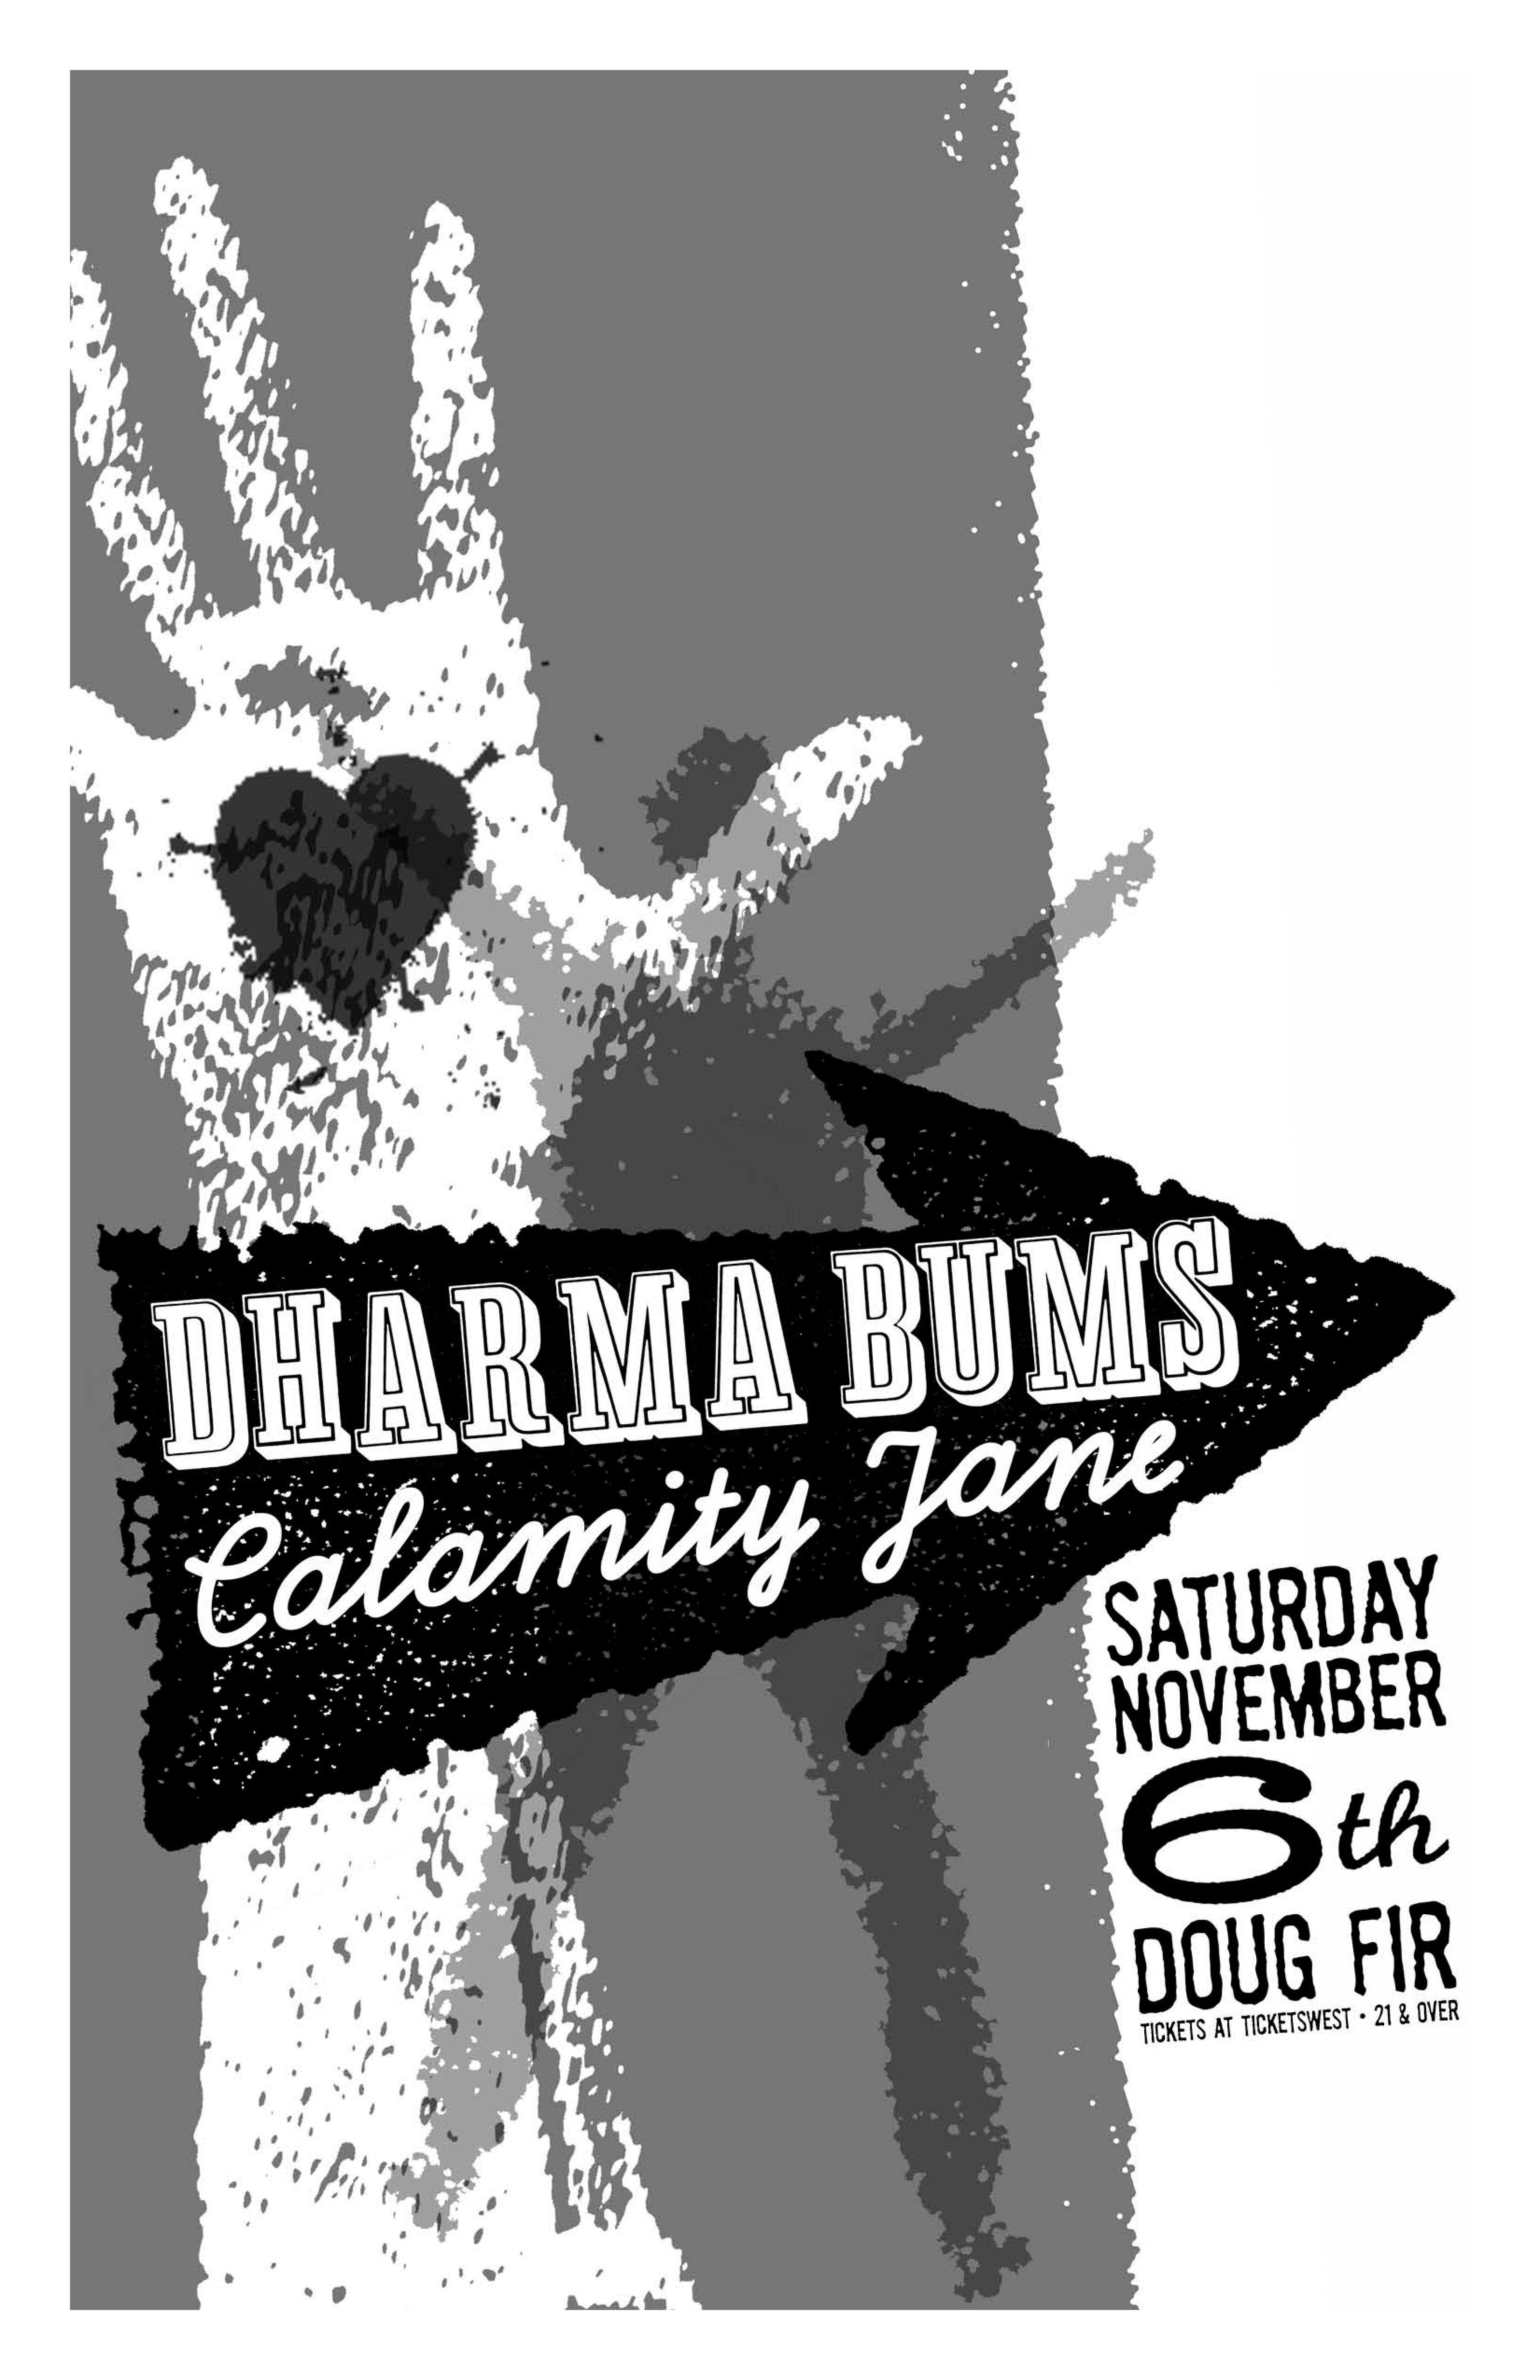 MXP-193.4 Dharma Bums 2010 Doug Fir  Nov 6 Concert Poster